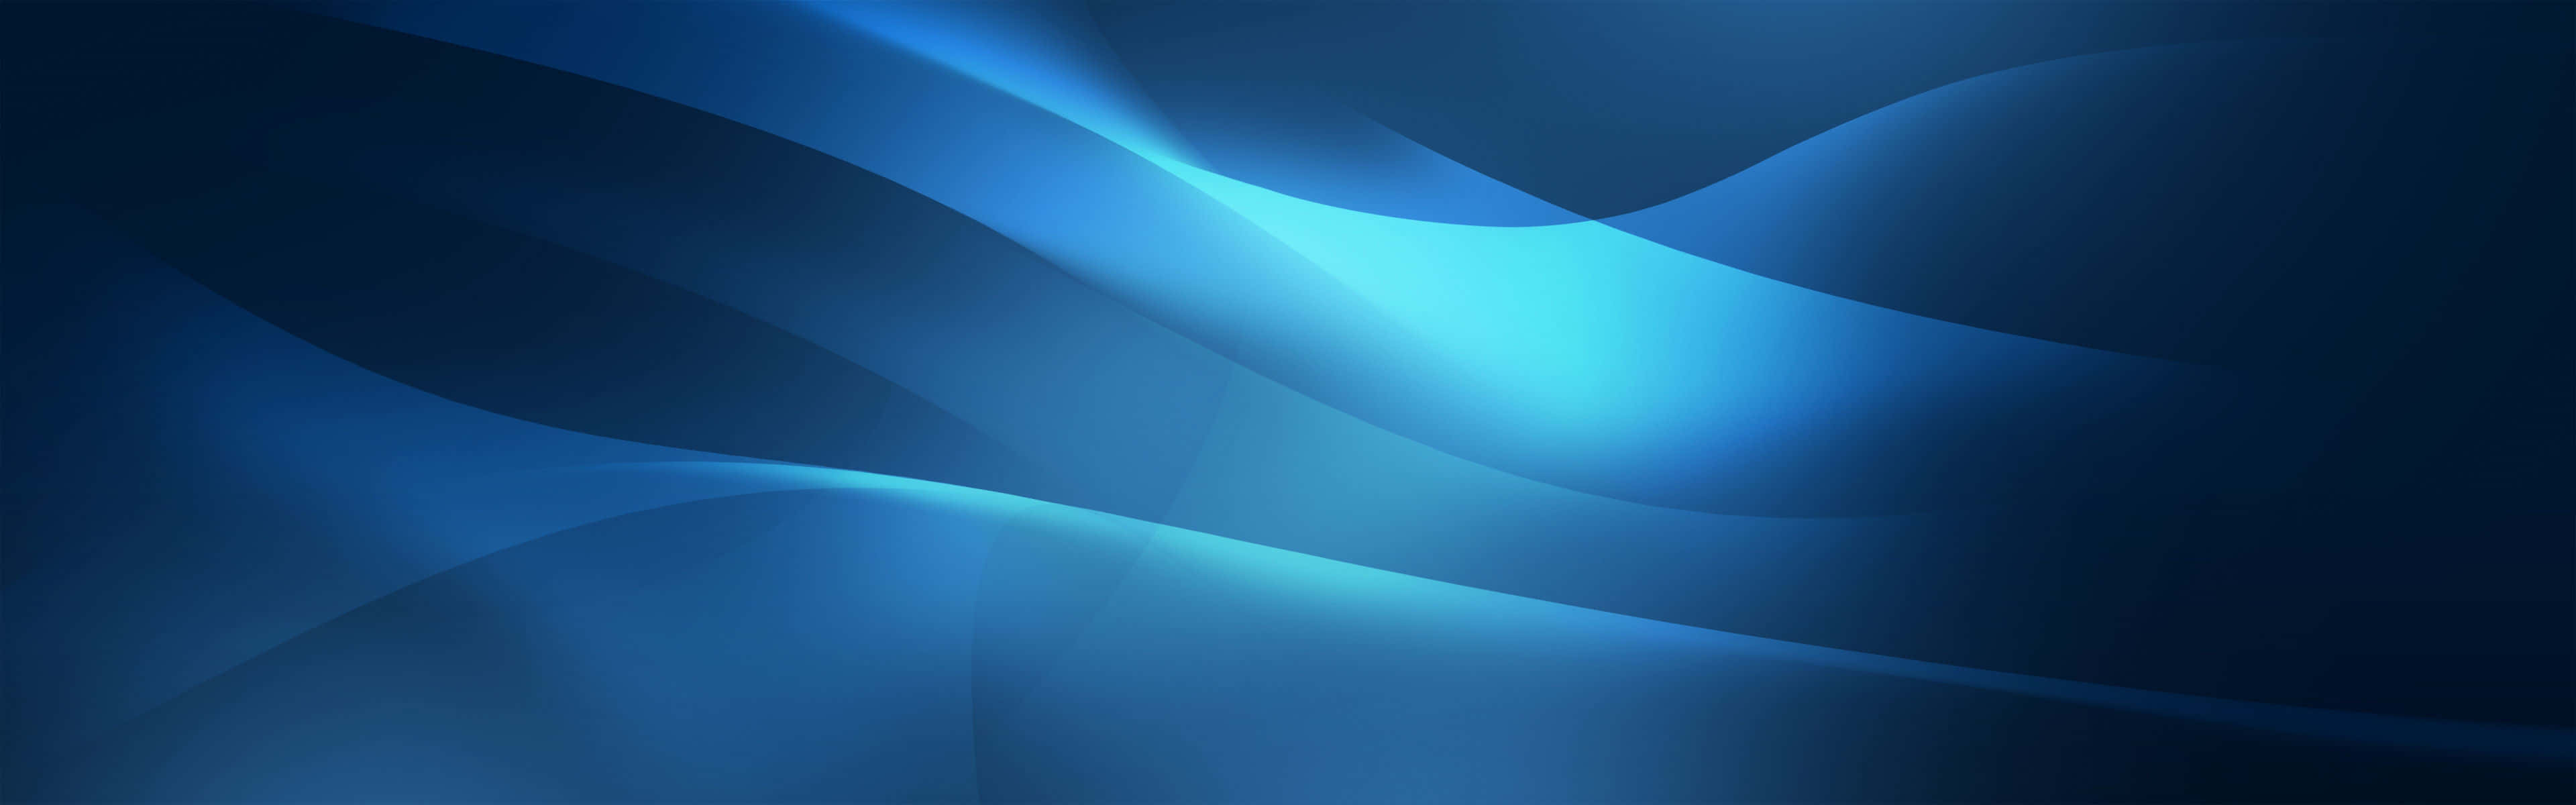 Dubblaskärmar Ökar Produktiviteten I Windows 10. Wallpaper